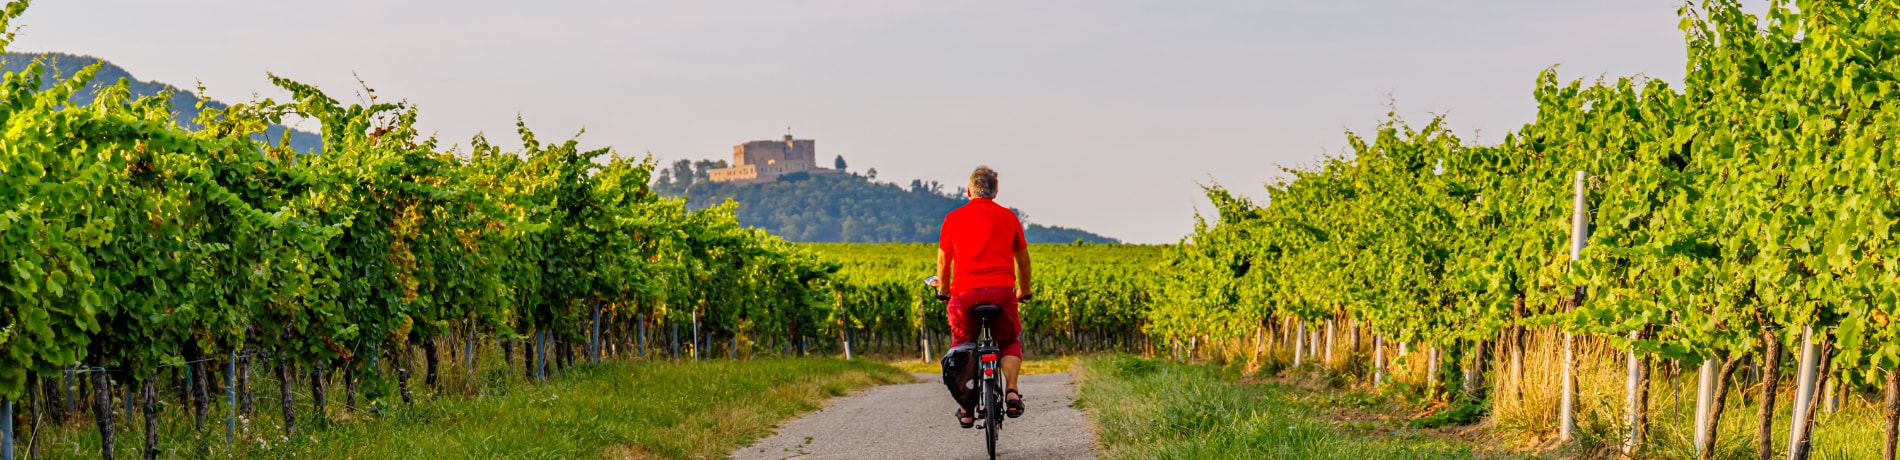 Gita in bici sulla strada del vino, Palatinato renano , Germania | Eden Viaggi